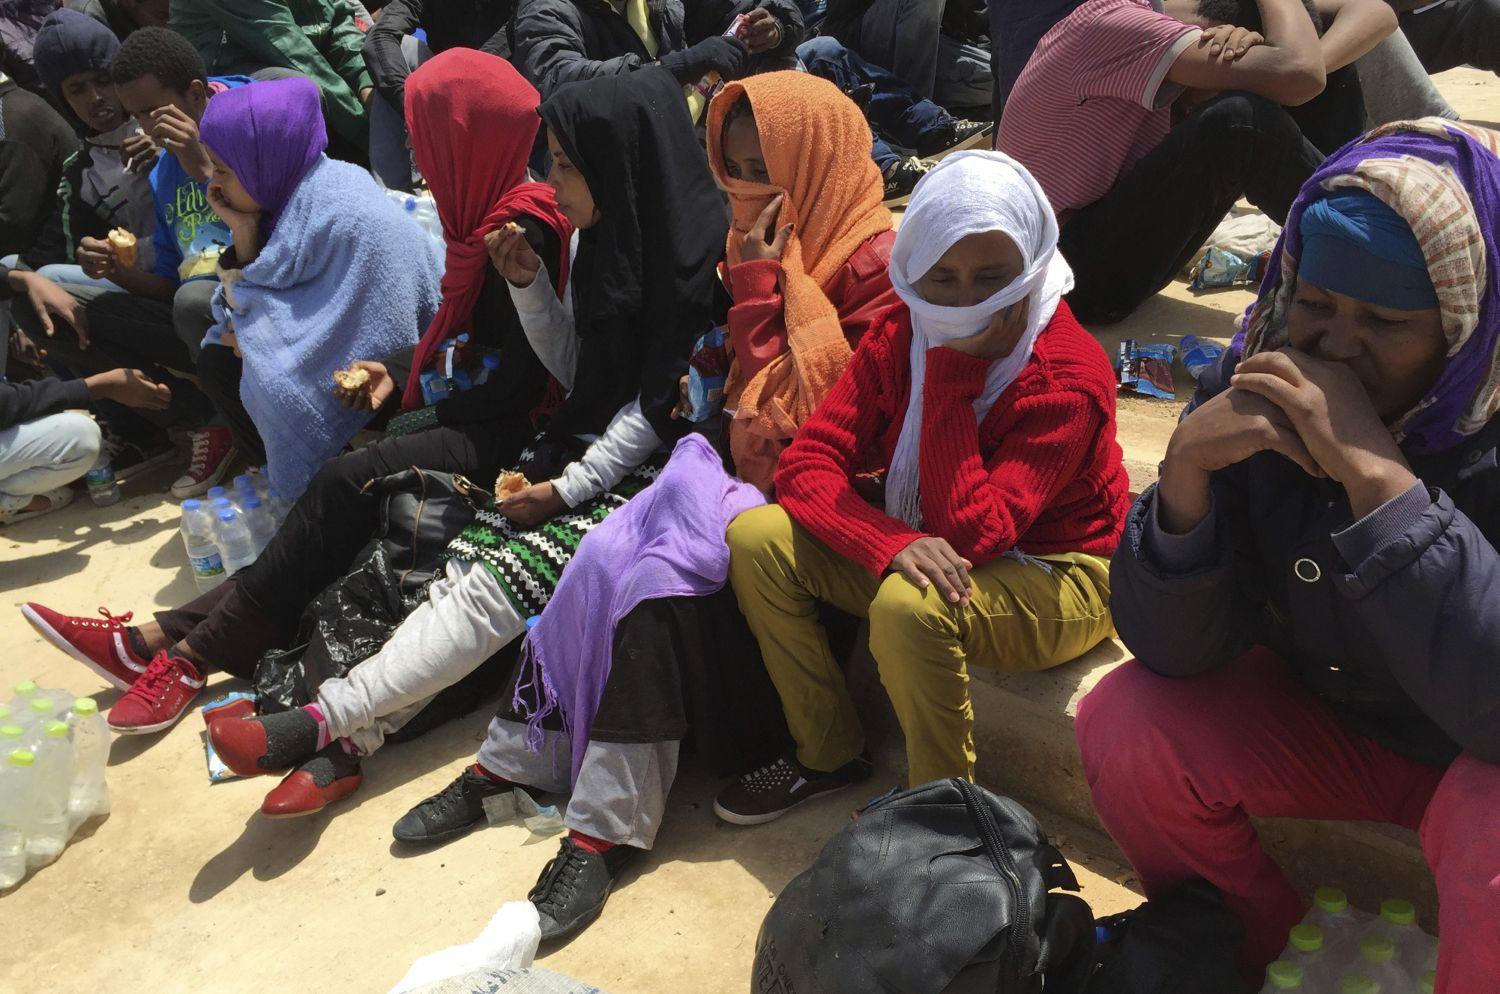  Majdnem 600 afrikai migránst fogtak el Líbiában a múlt héten, köztük terhes nőket és 18 gyereket, akik egy halászhajón próbáltak eljutni Európába